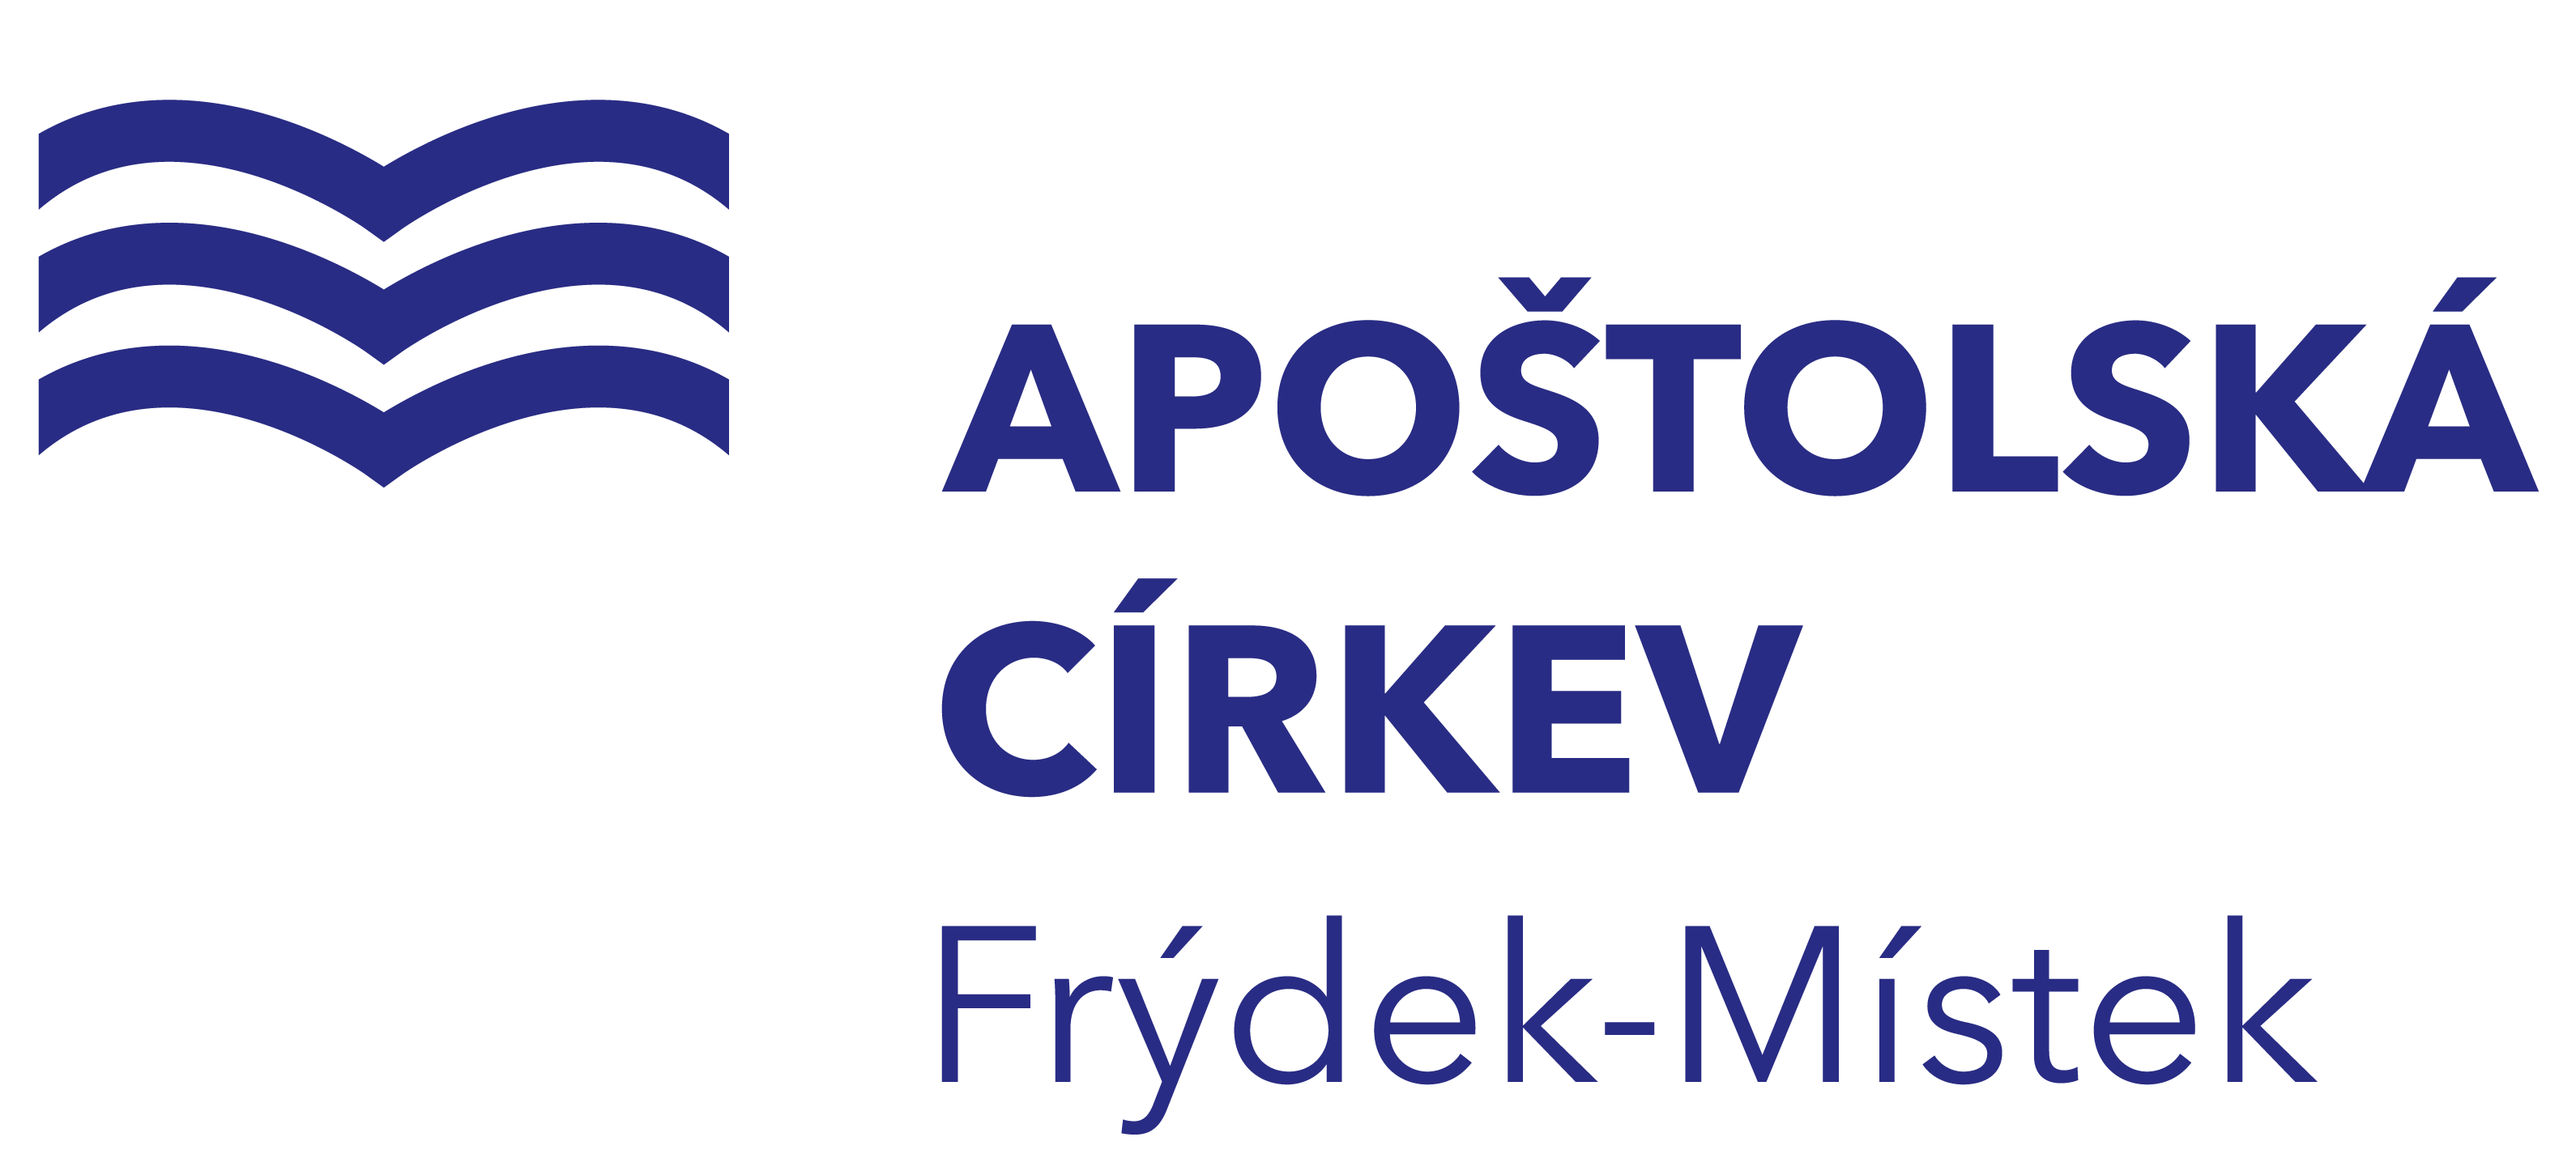 Apoštolská církev logo